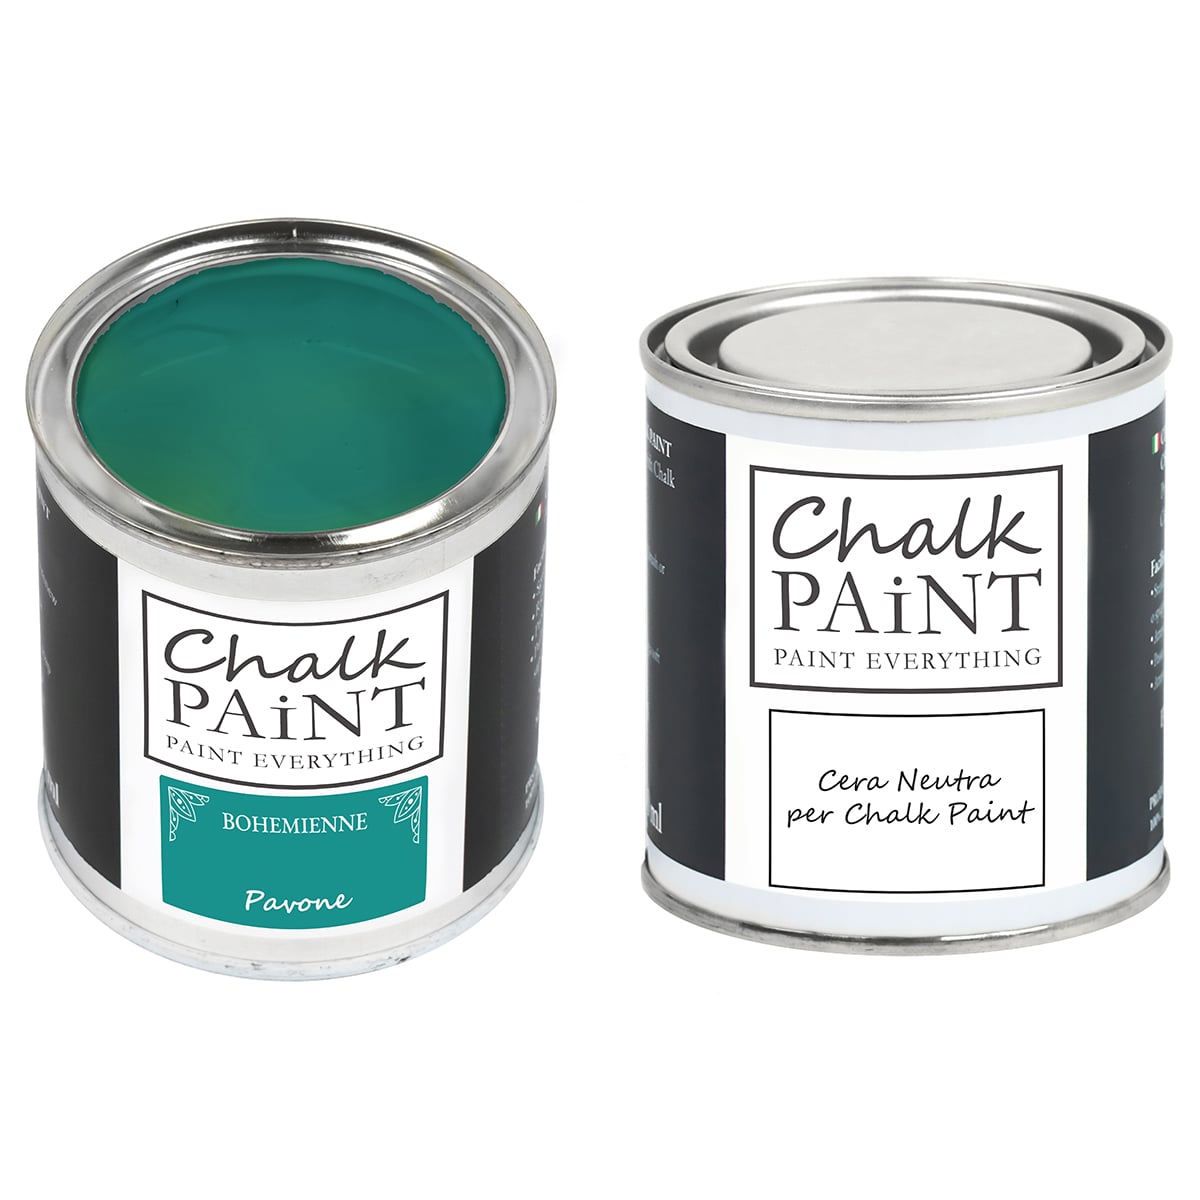 Chalk paint e cera in offerta decora facile con paint magic